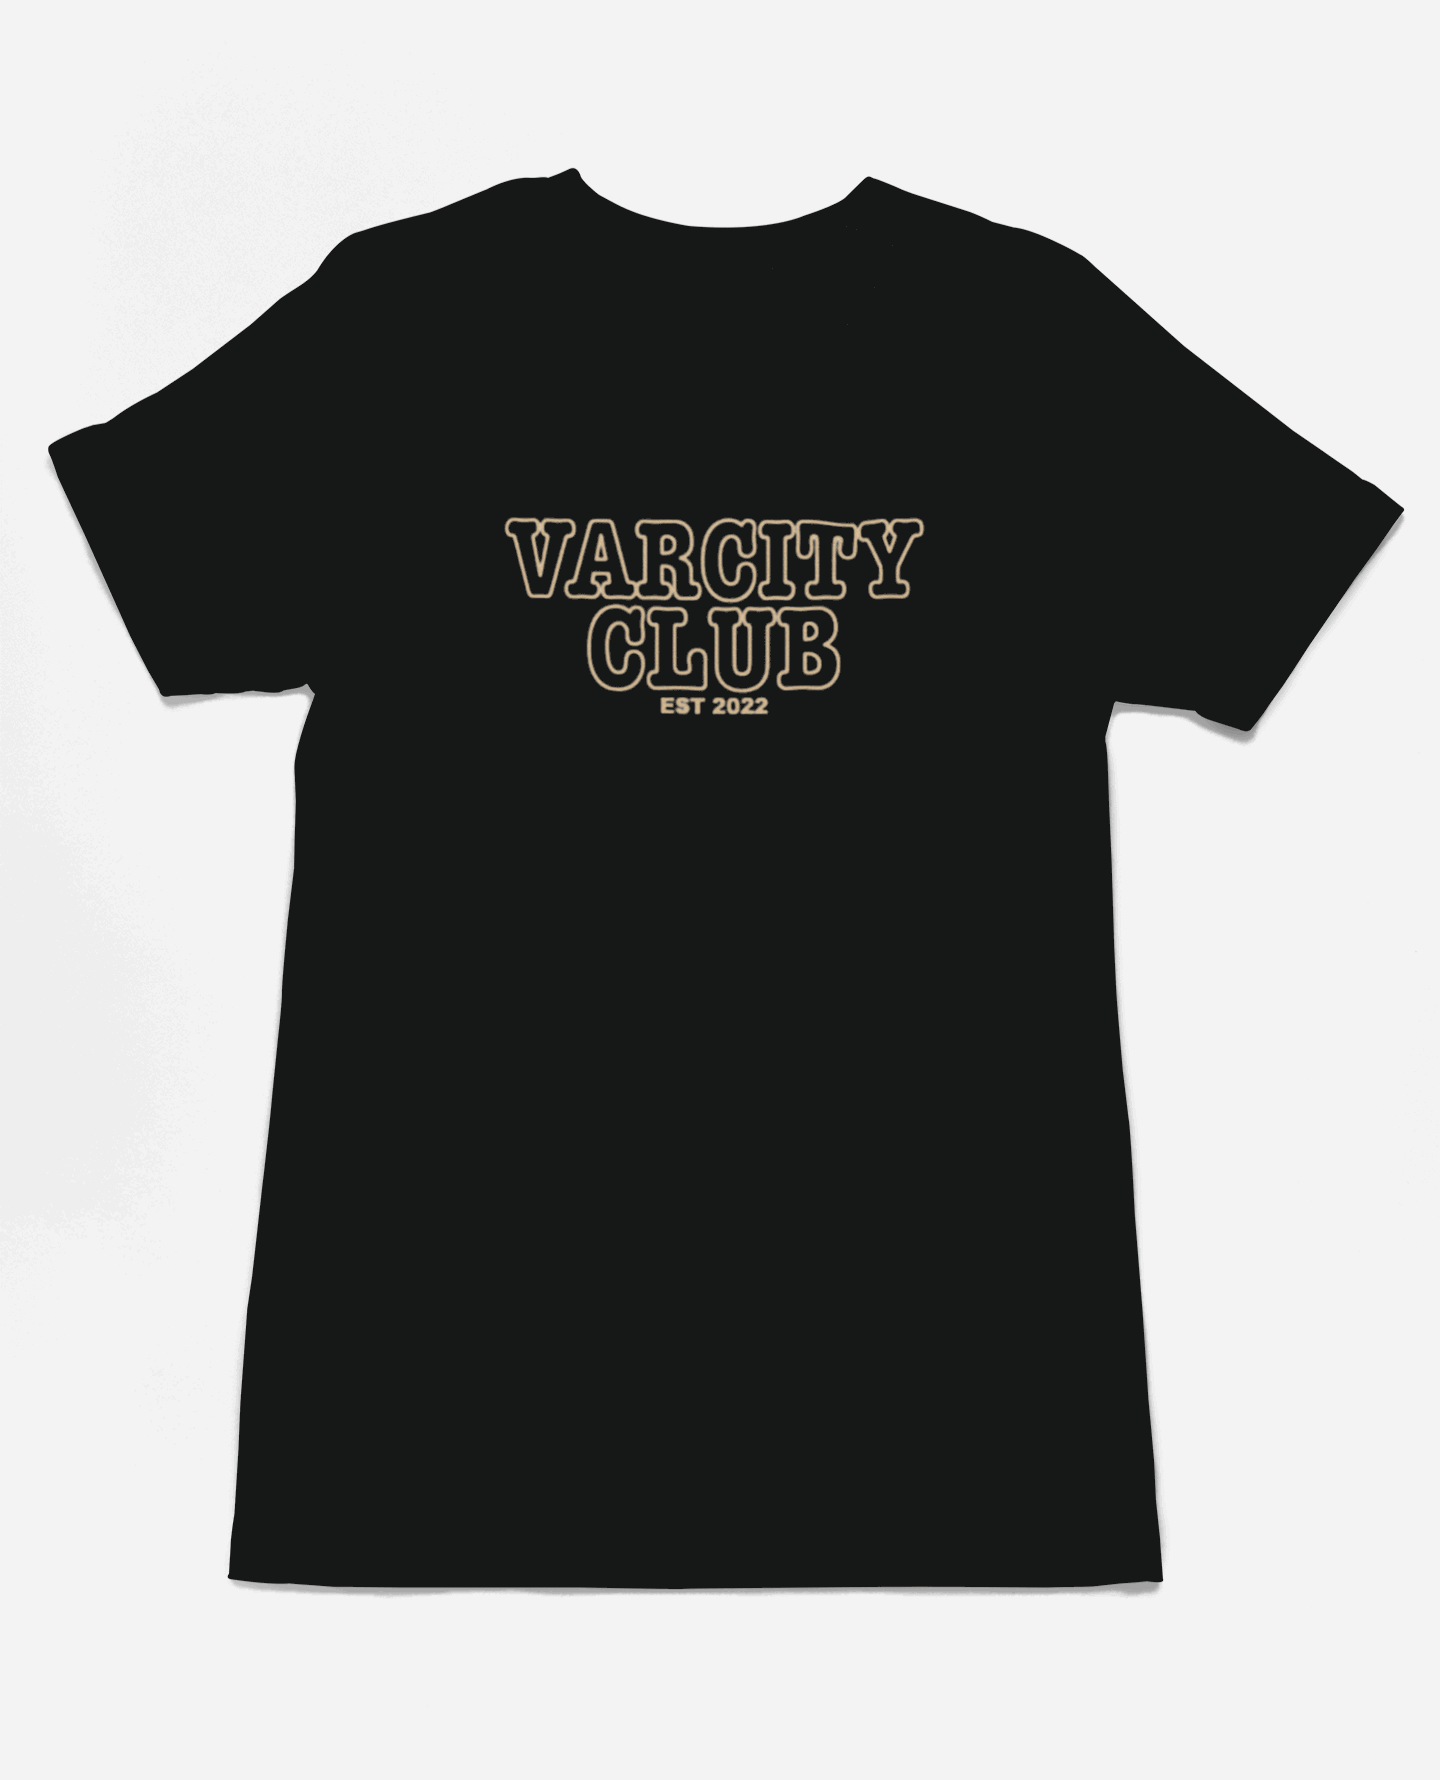 Classic Varcity ® Club